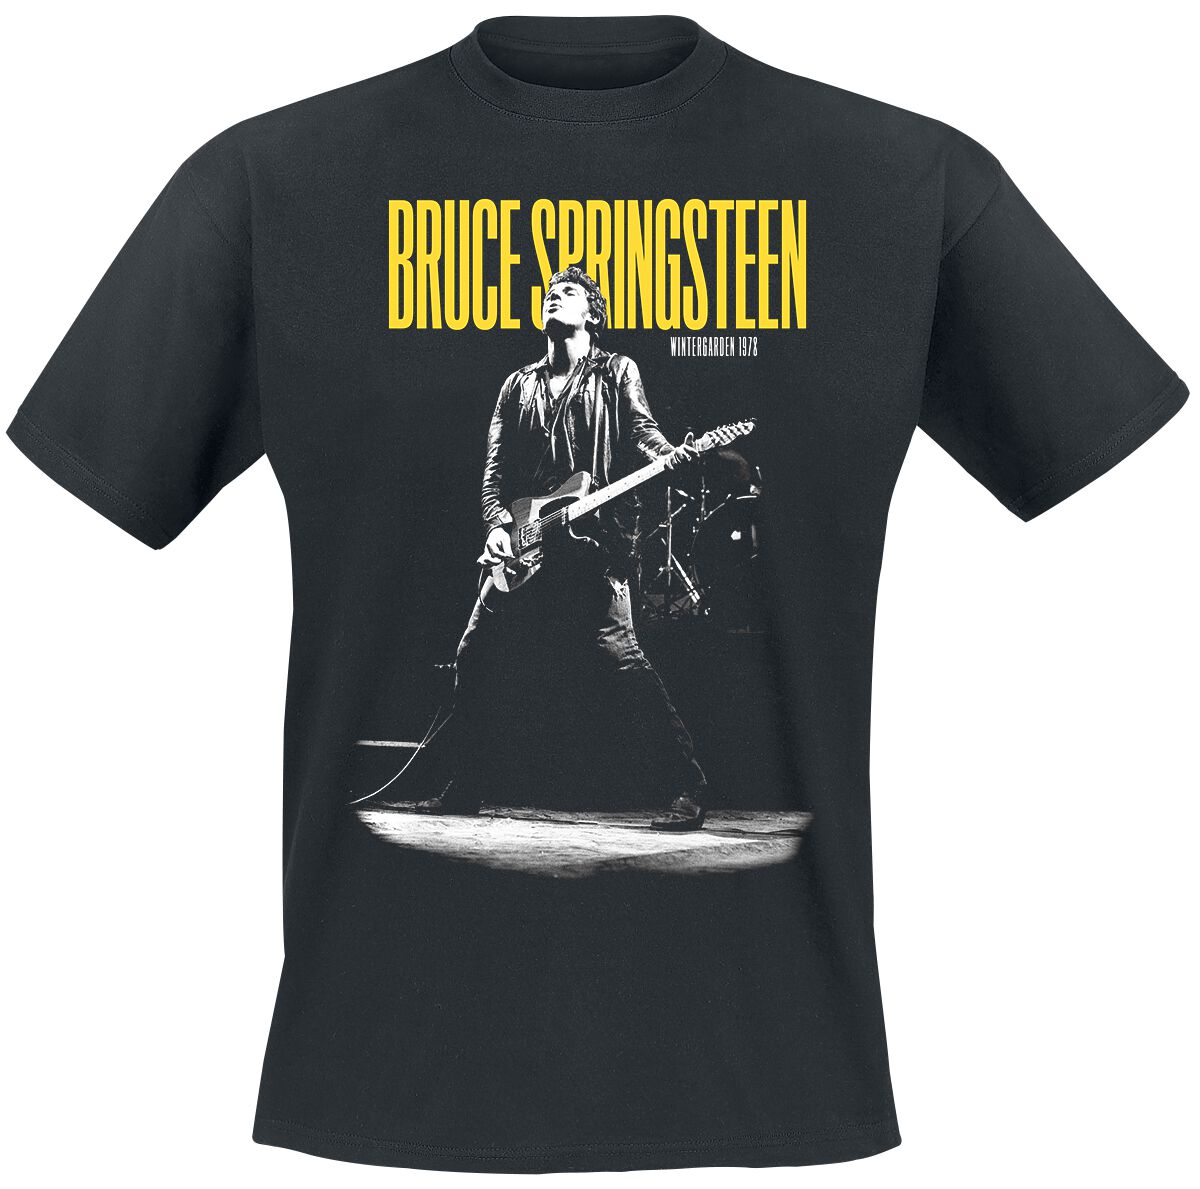 Bruce Springsteen T-Shirt - Winterland Ballroom Guitar - S bis 3XL - für Männer - Größe XL - schwarz  - Lizenziertes Merchandise!